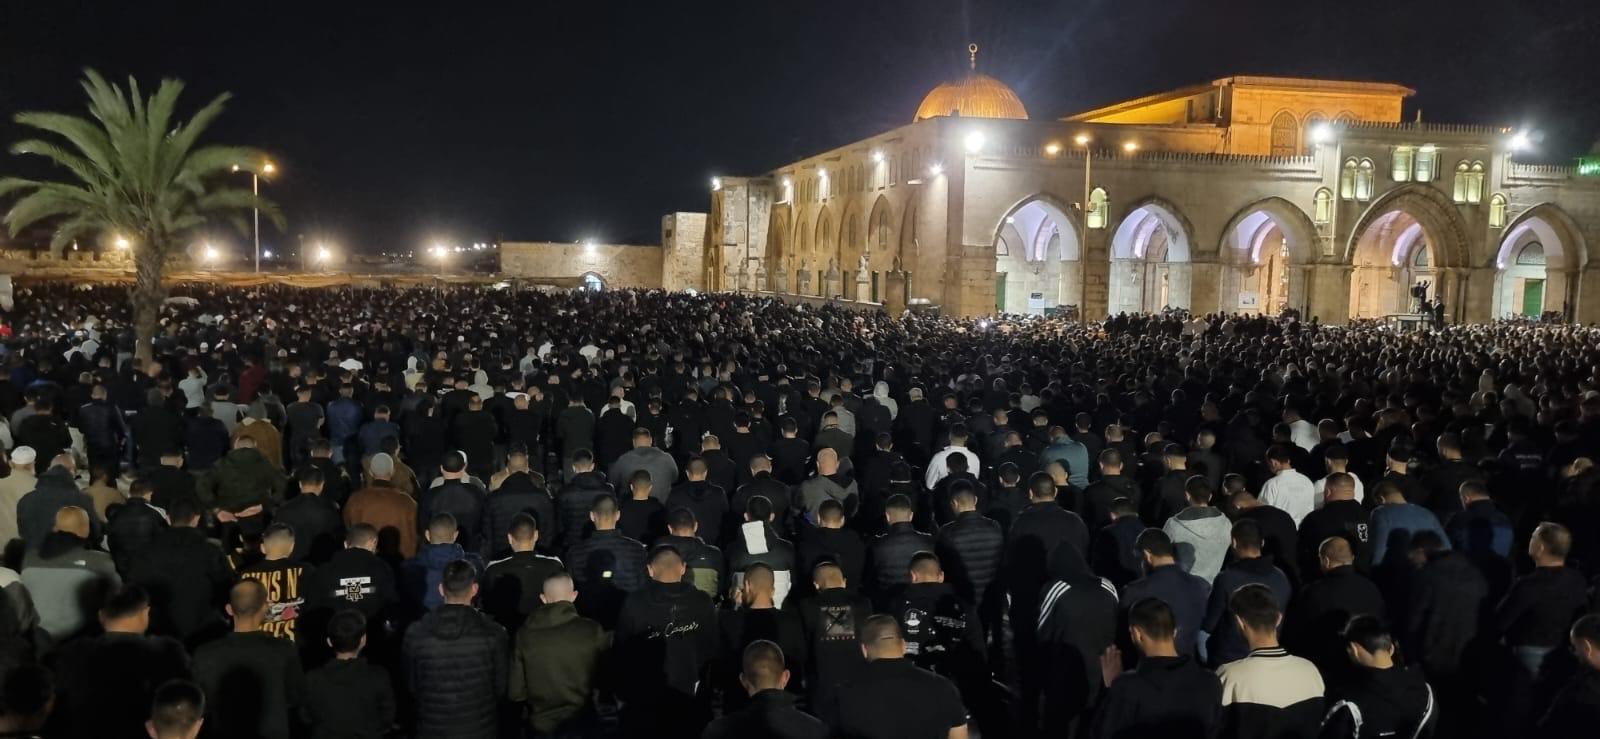 150 ألف مصل يؤدون العشاء والتراويح في المسجد الأقصى المبارك بالقدس المحتلة